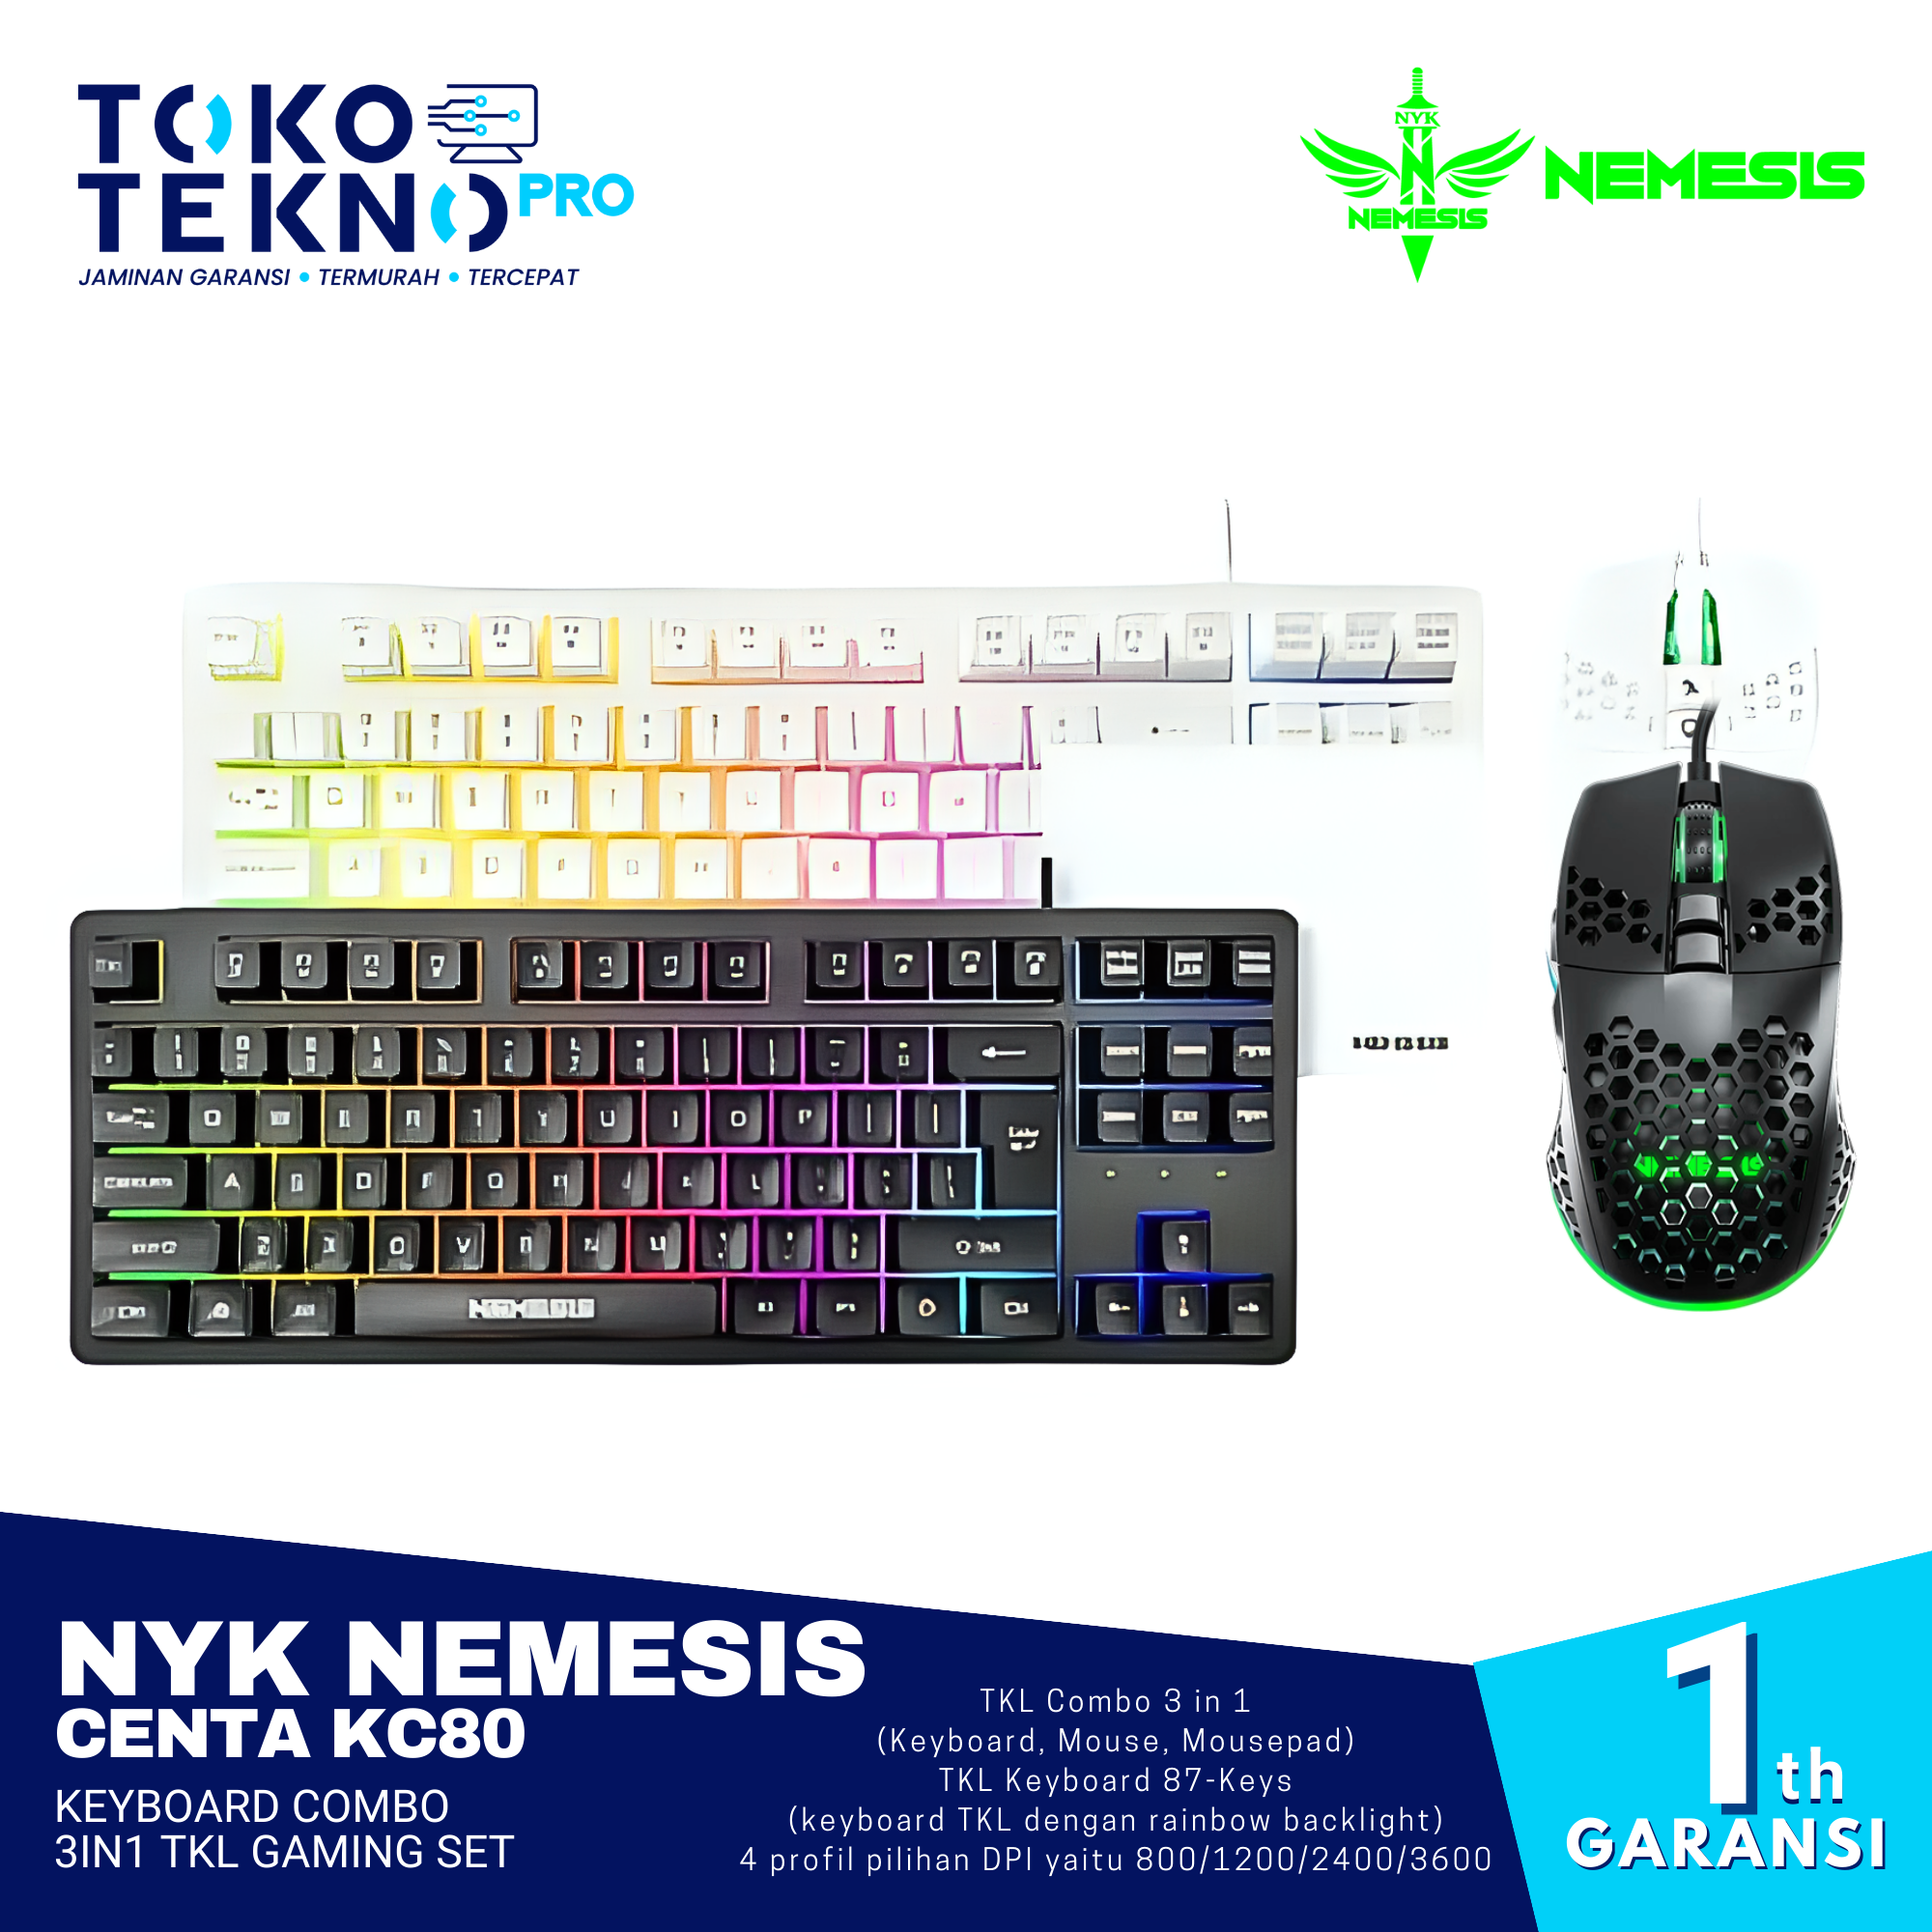 NYK Nemesis Centa KC80 Keyboard Combo 3in1 TKL Gaming Set